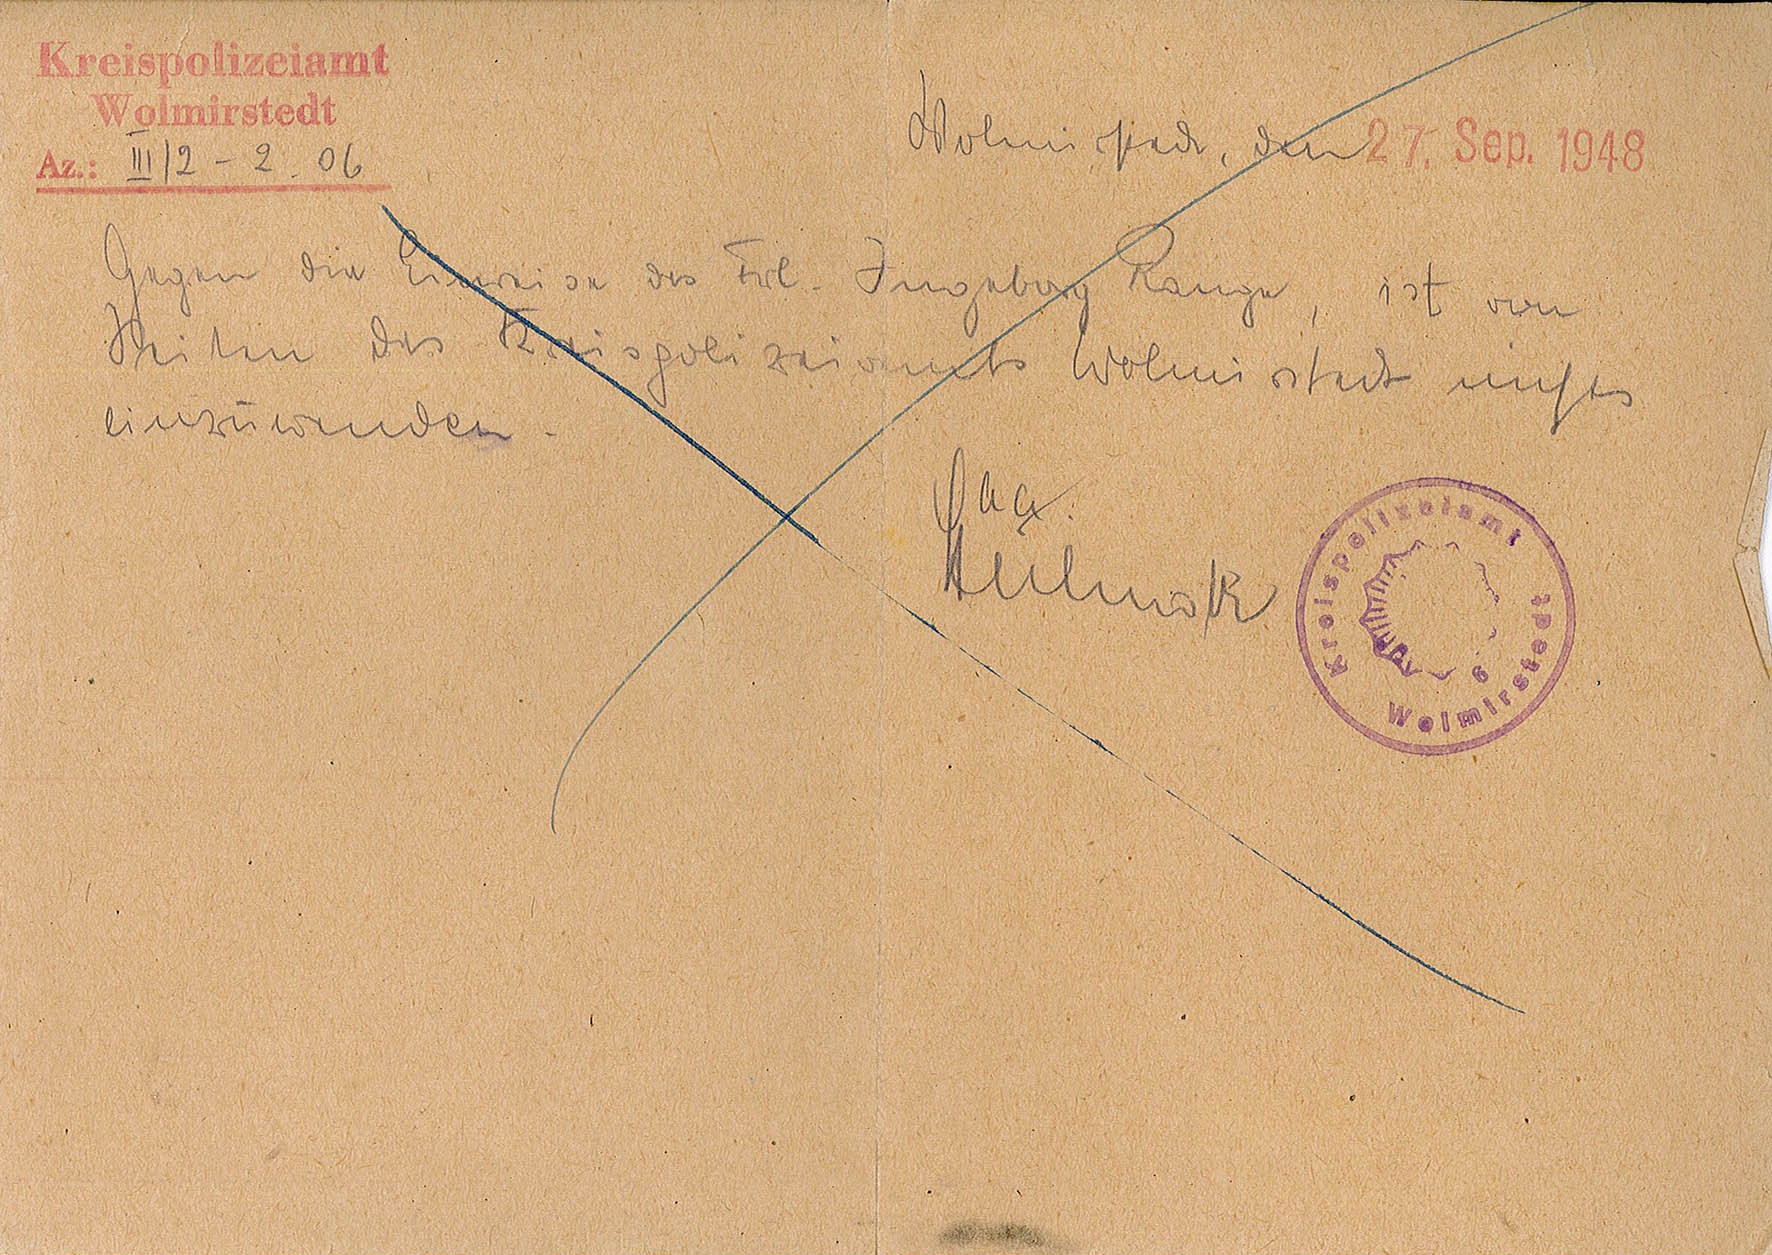 Einreisegenehmigung zur Eheschließung für Ingeborg Range, 30. September 1948 (Museum Wolmirstedt RR-F)